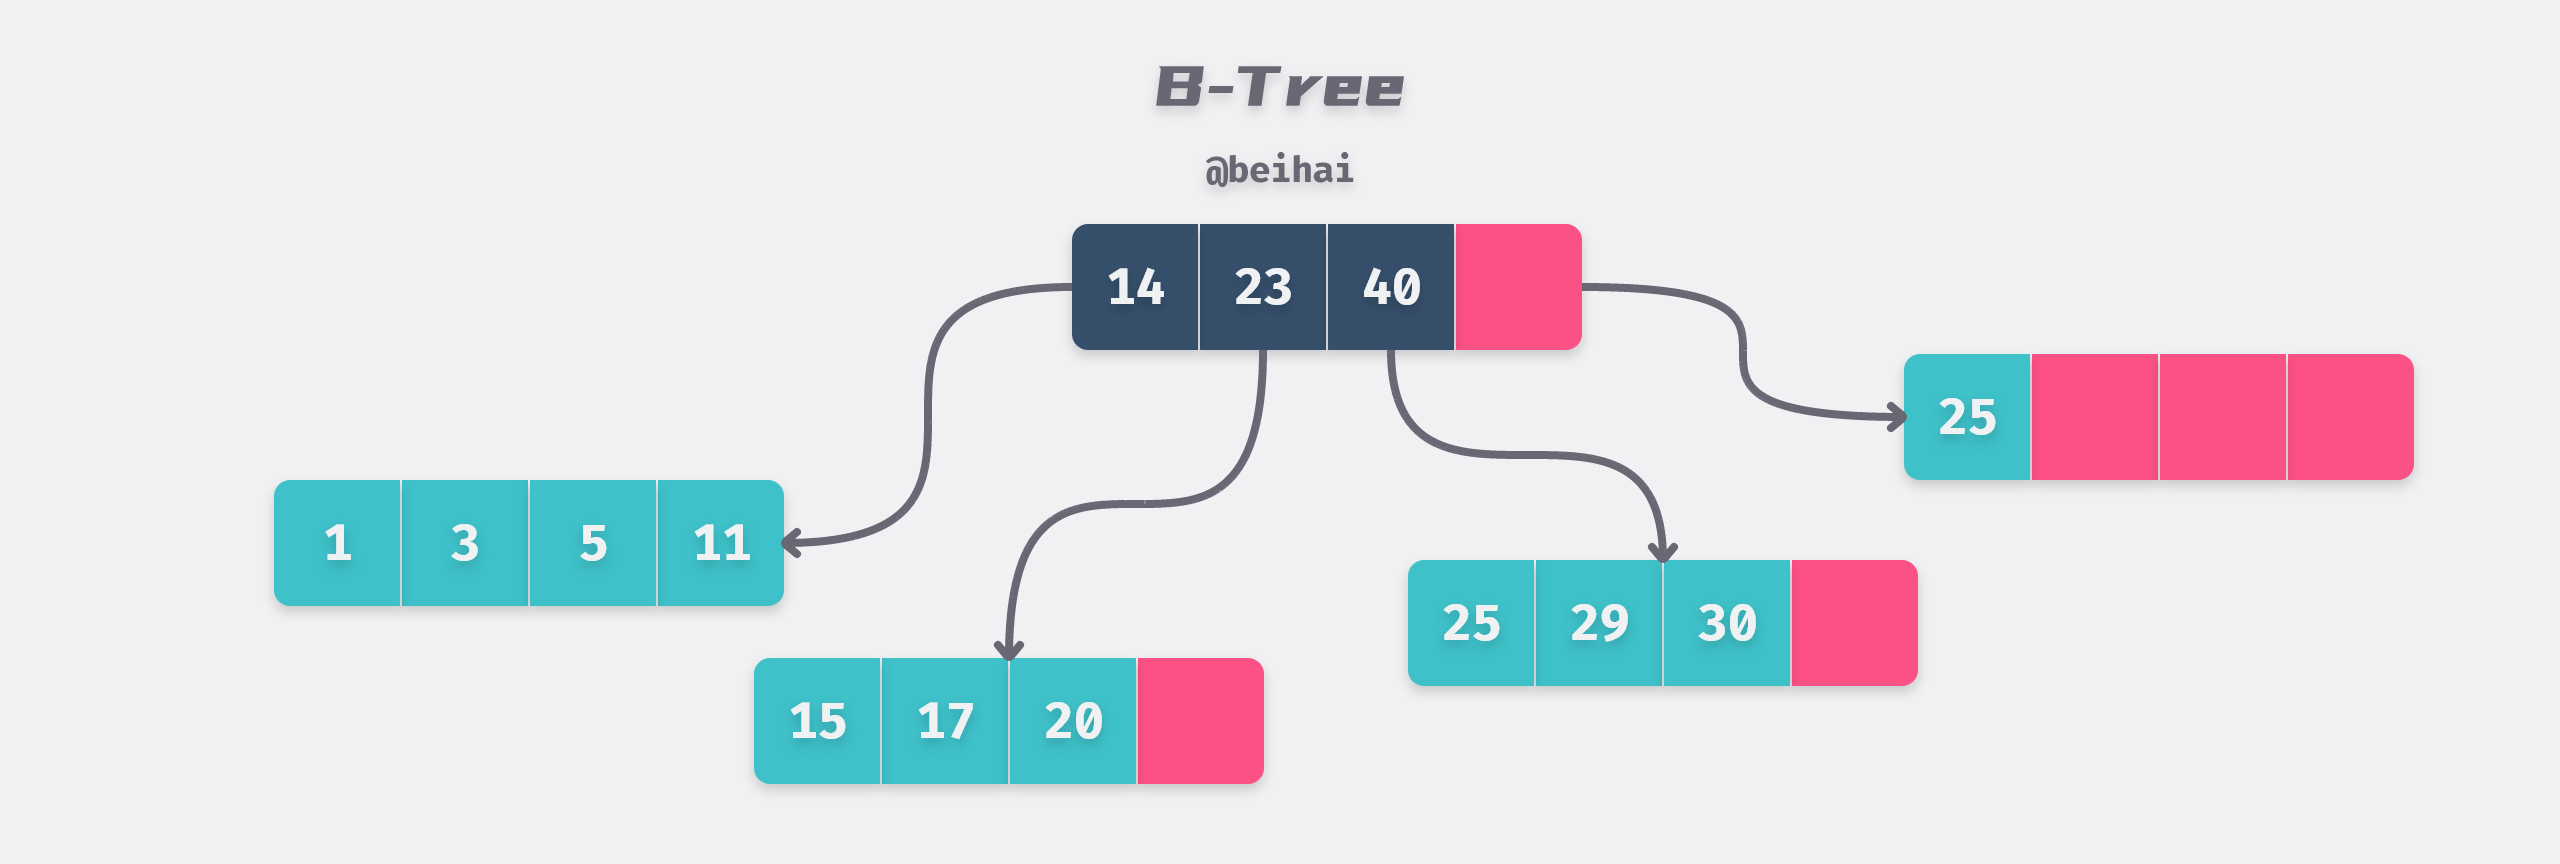 B-Tree